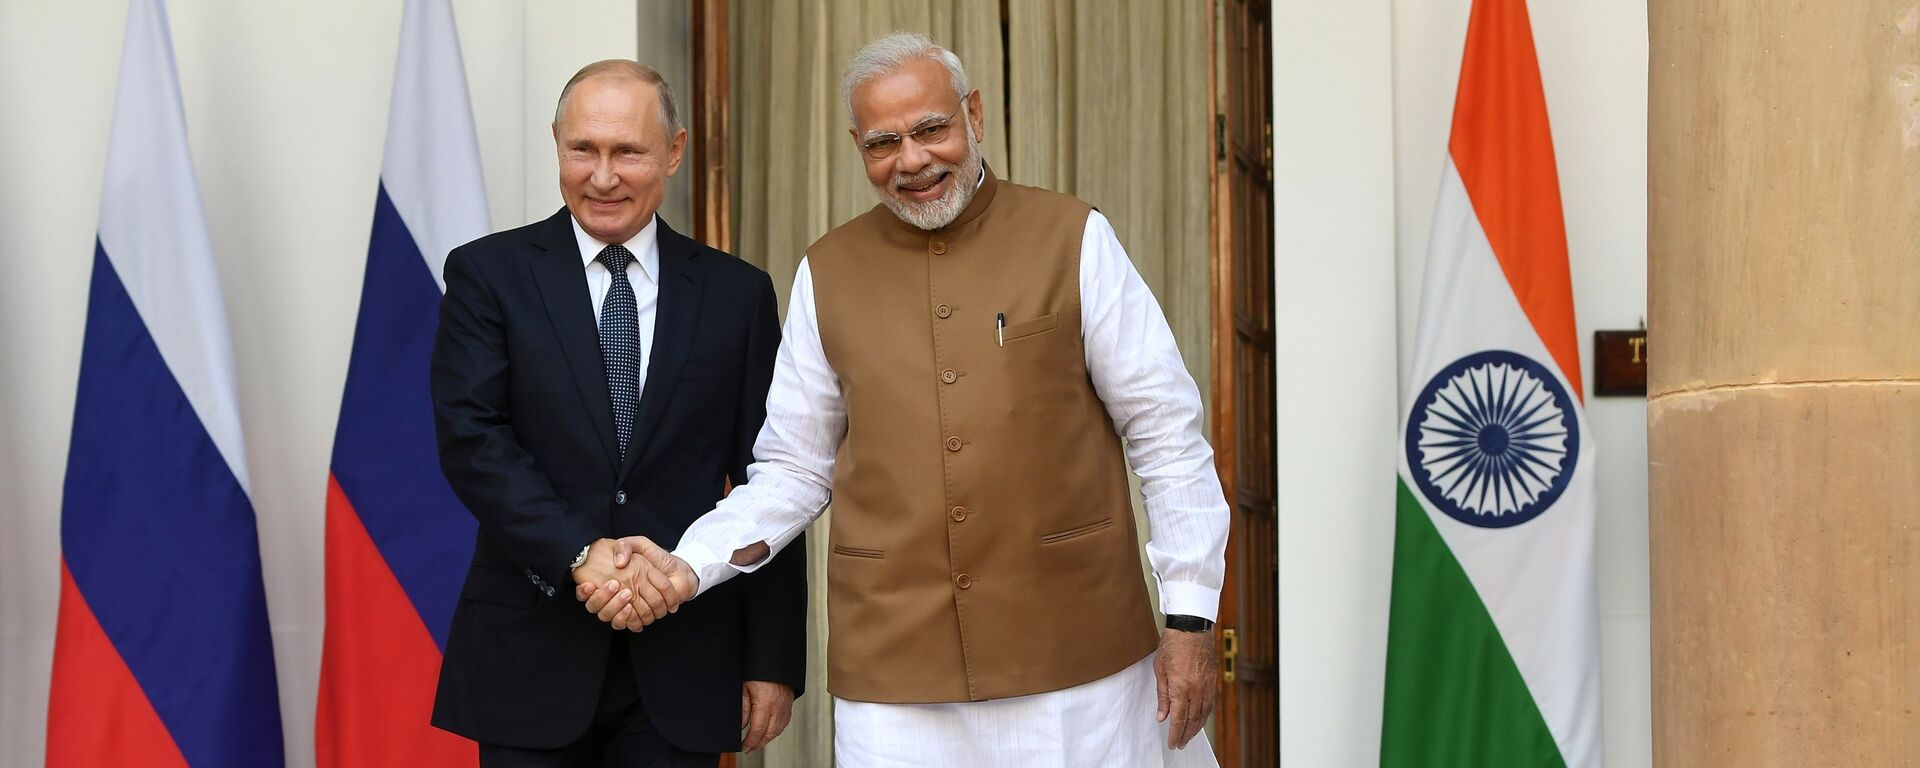 Bộ Ngoại giao Nga khẳng định phát triển hợp tác với Ấn Độ, đặc biệt là lĩnh vực hạt nhân - Sputnik Việt Nam, 1920, 13.12.2018